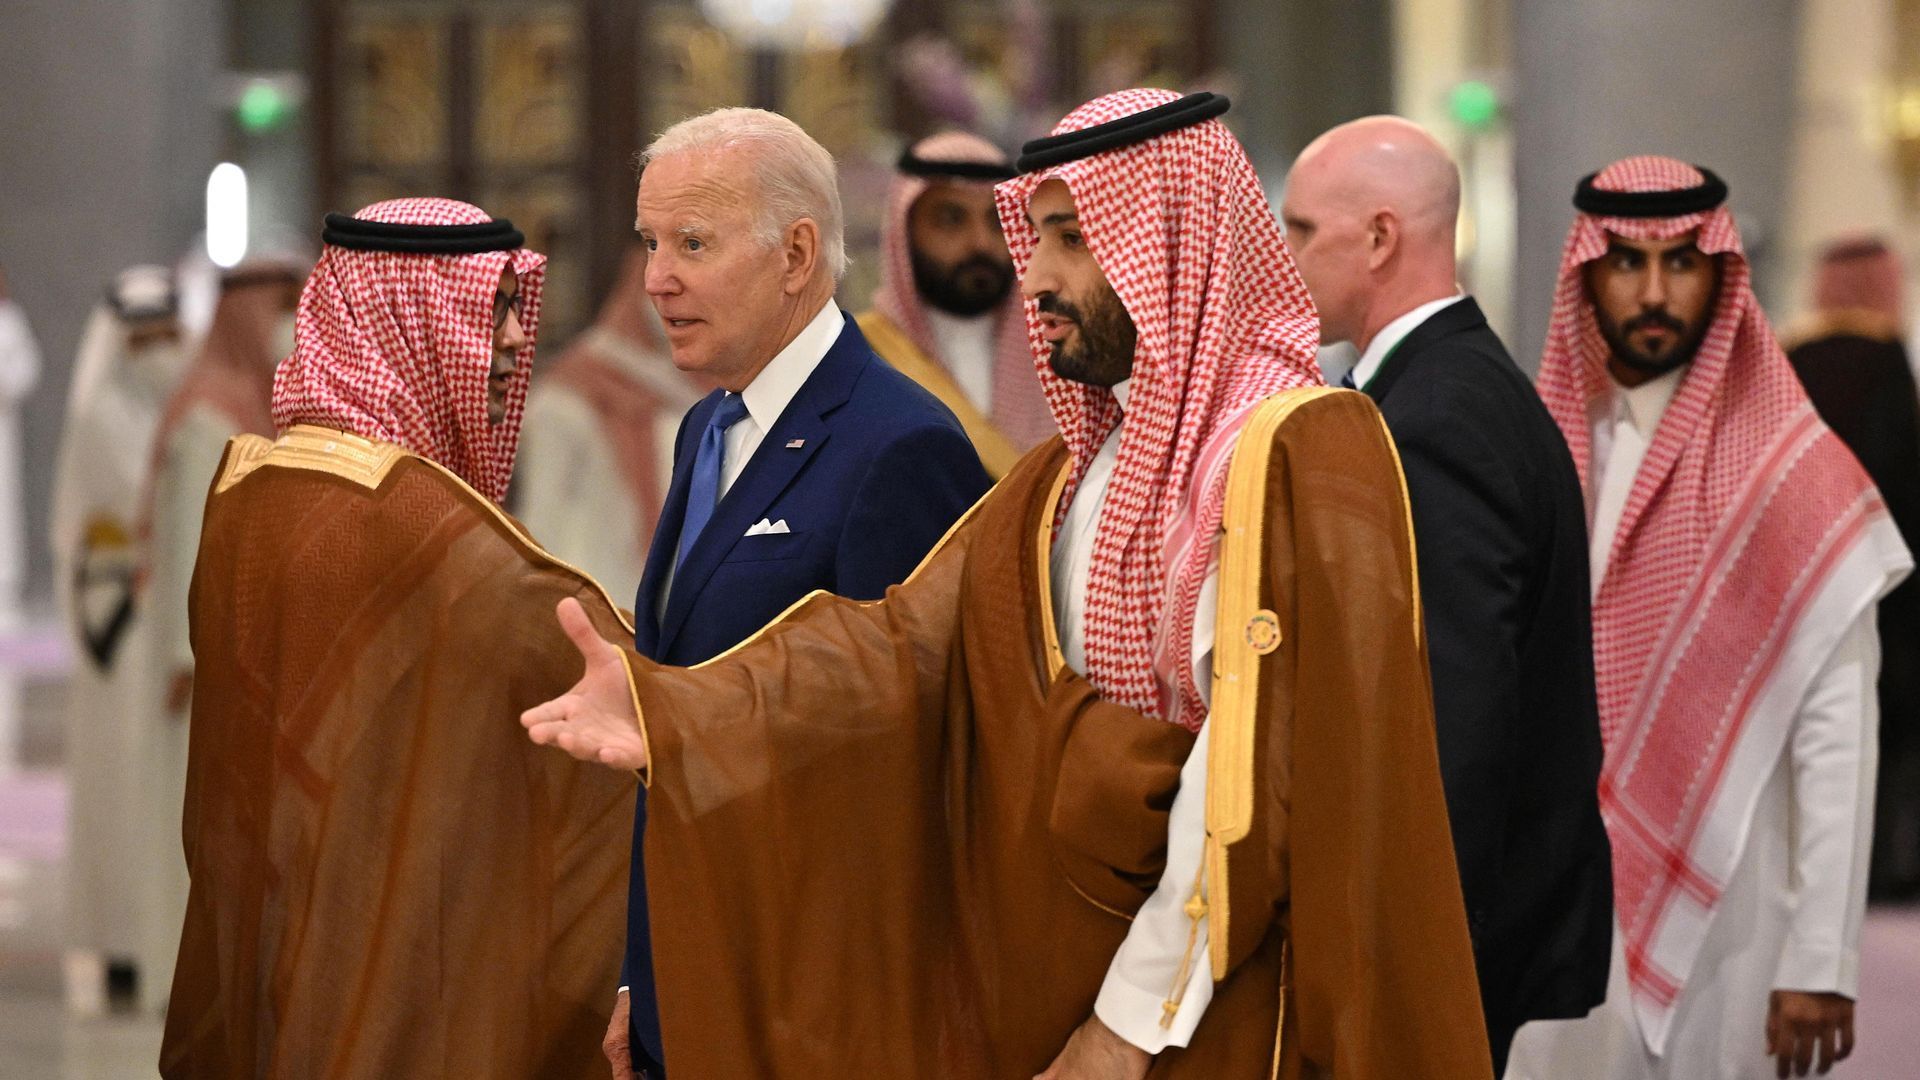 الرئيس الأمريكي جو بايدن وولي العهد السعودي الأمير محمد بن سلمان في جدة في 16 يوليو 2022. الصورة: MANDEL NGAN/POOL/AFP عبر Getty Images